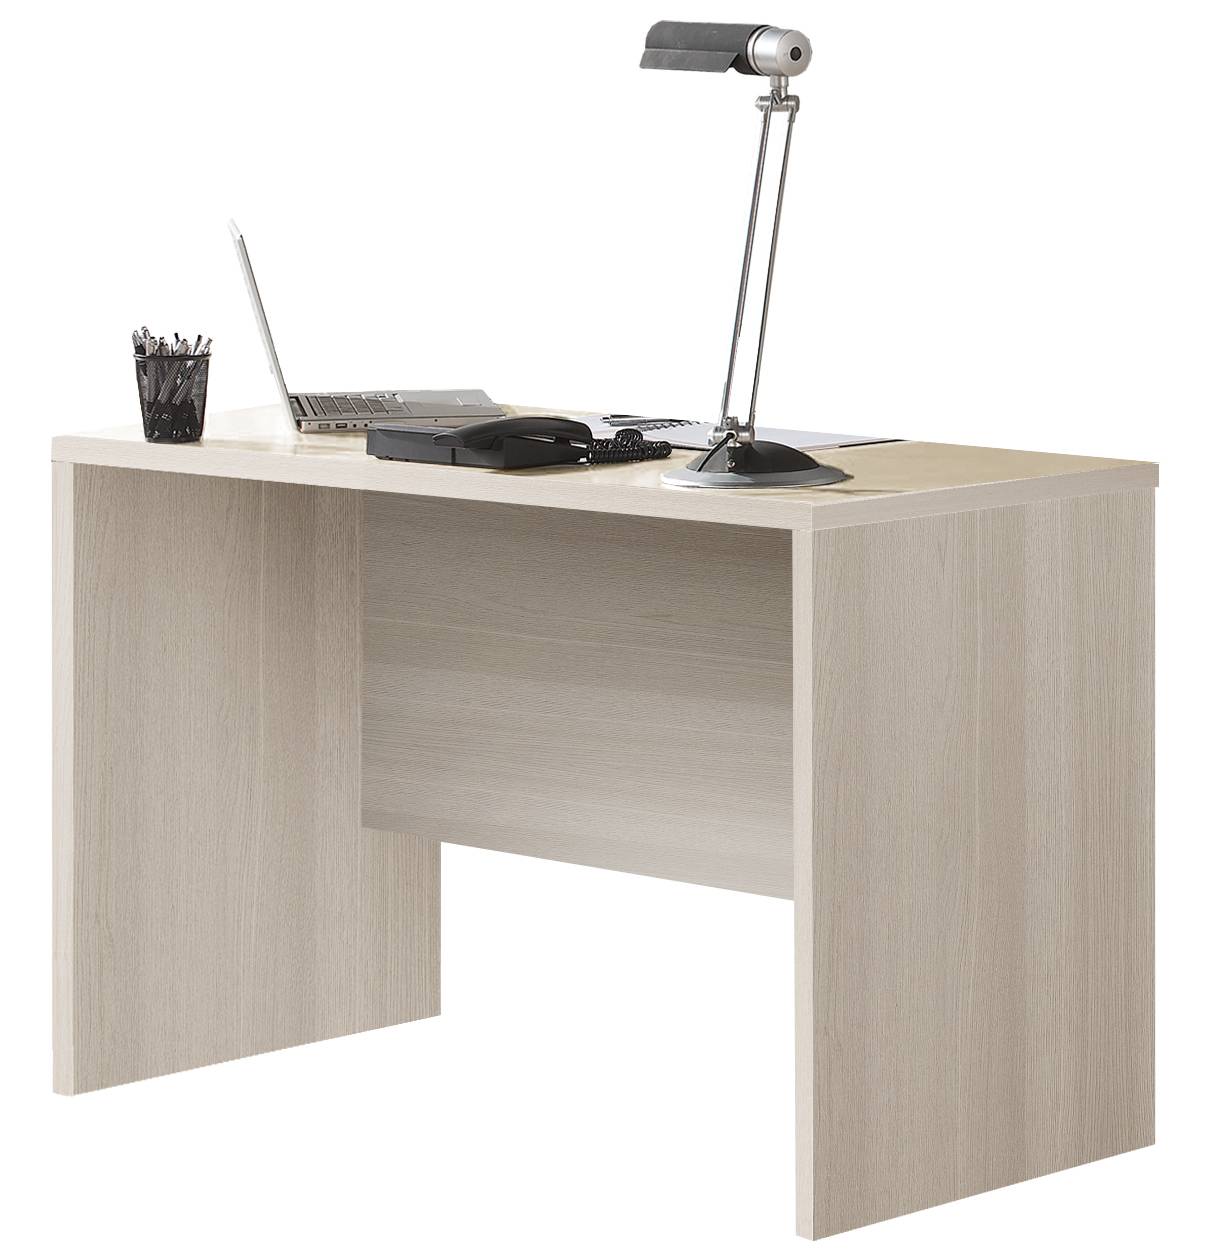 Mesa de escritorio de 120 cm. Acabada en color roble o nórdico